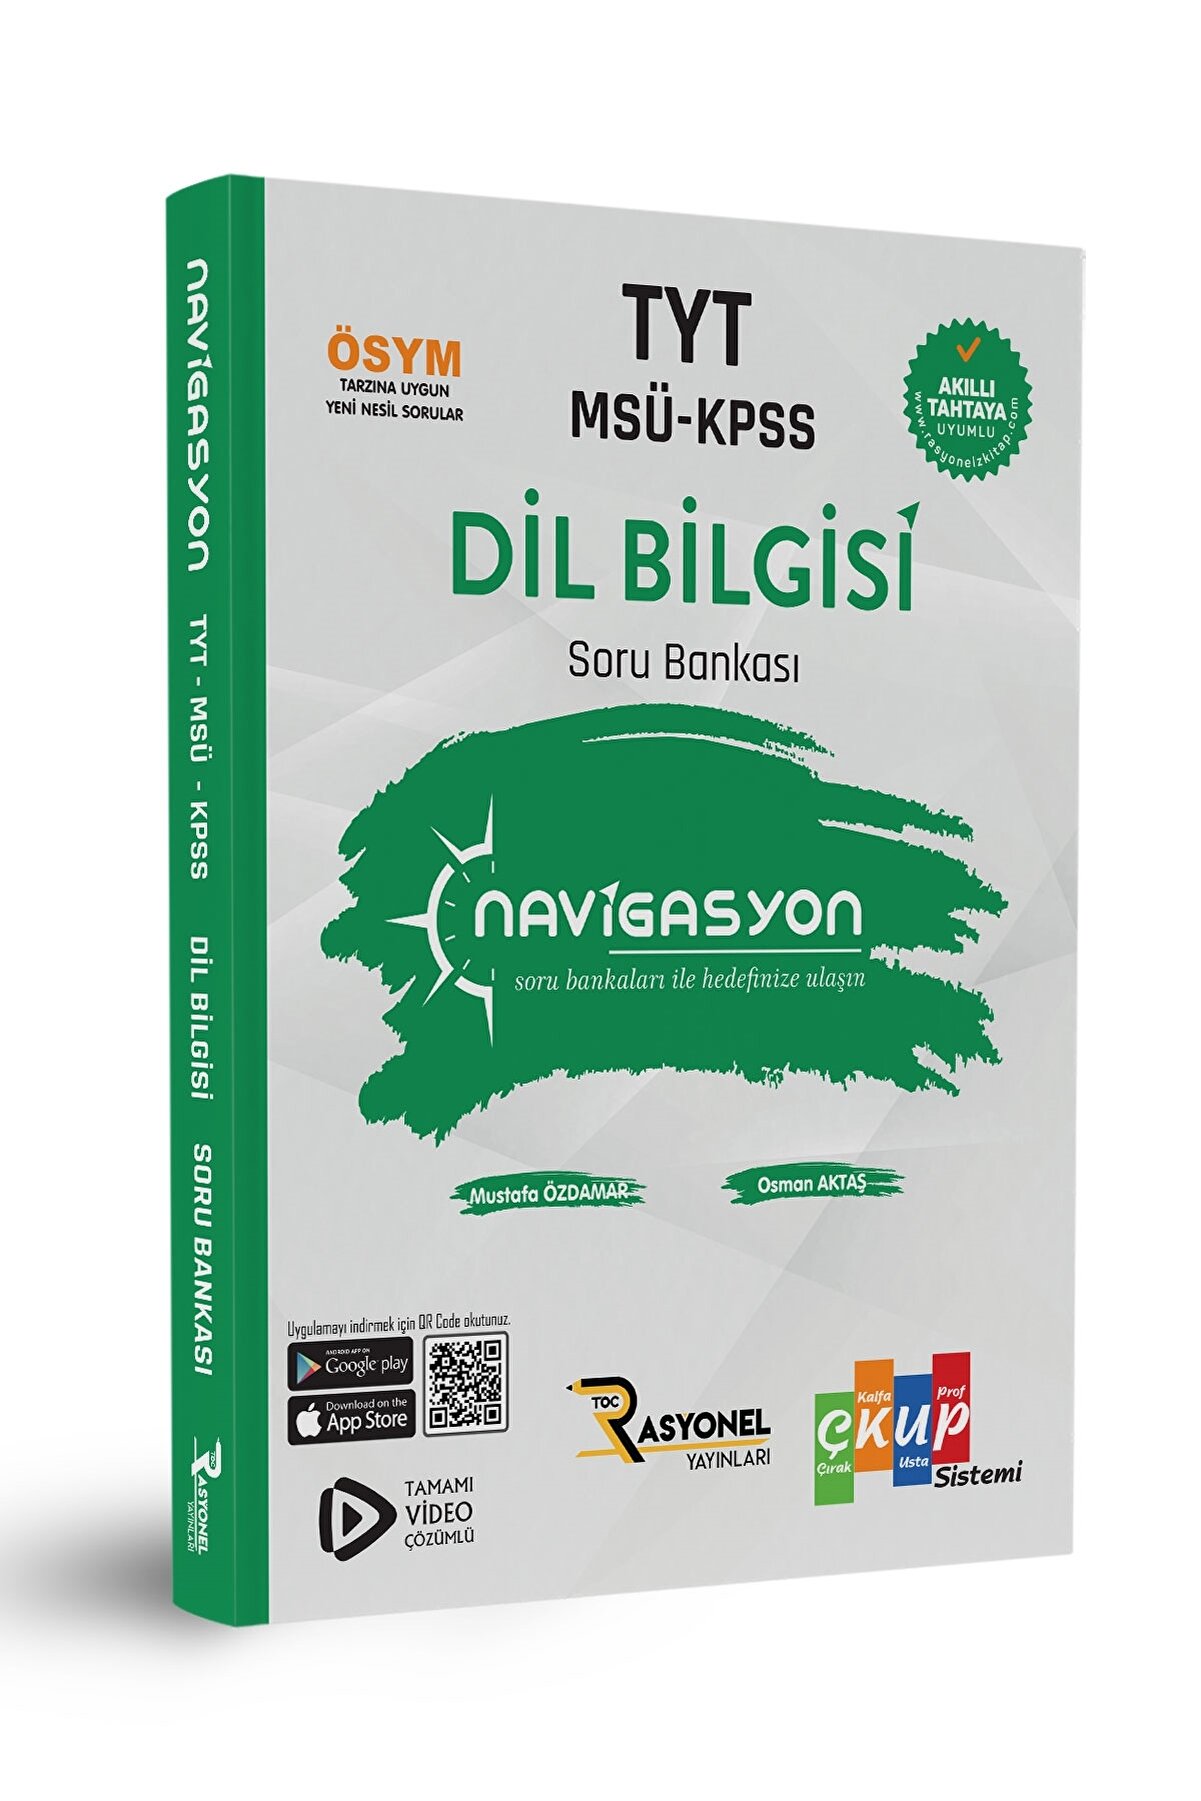 Rasyonel Yayınları Tyt-msü-kpss Dil Bilgisi Yeni Nesil Soru Bankası (yazarlarından Video Çözümlü)